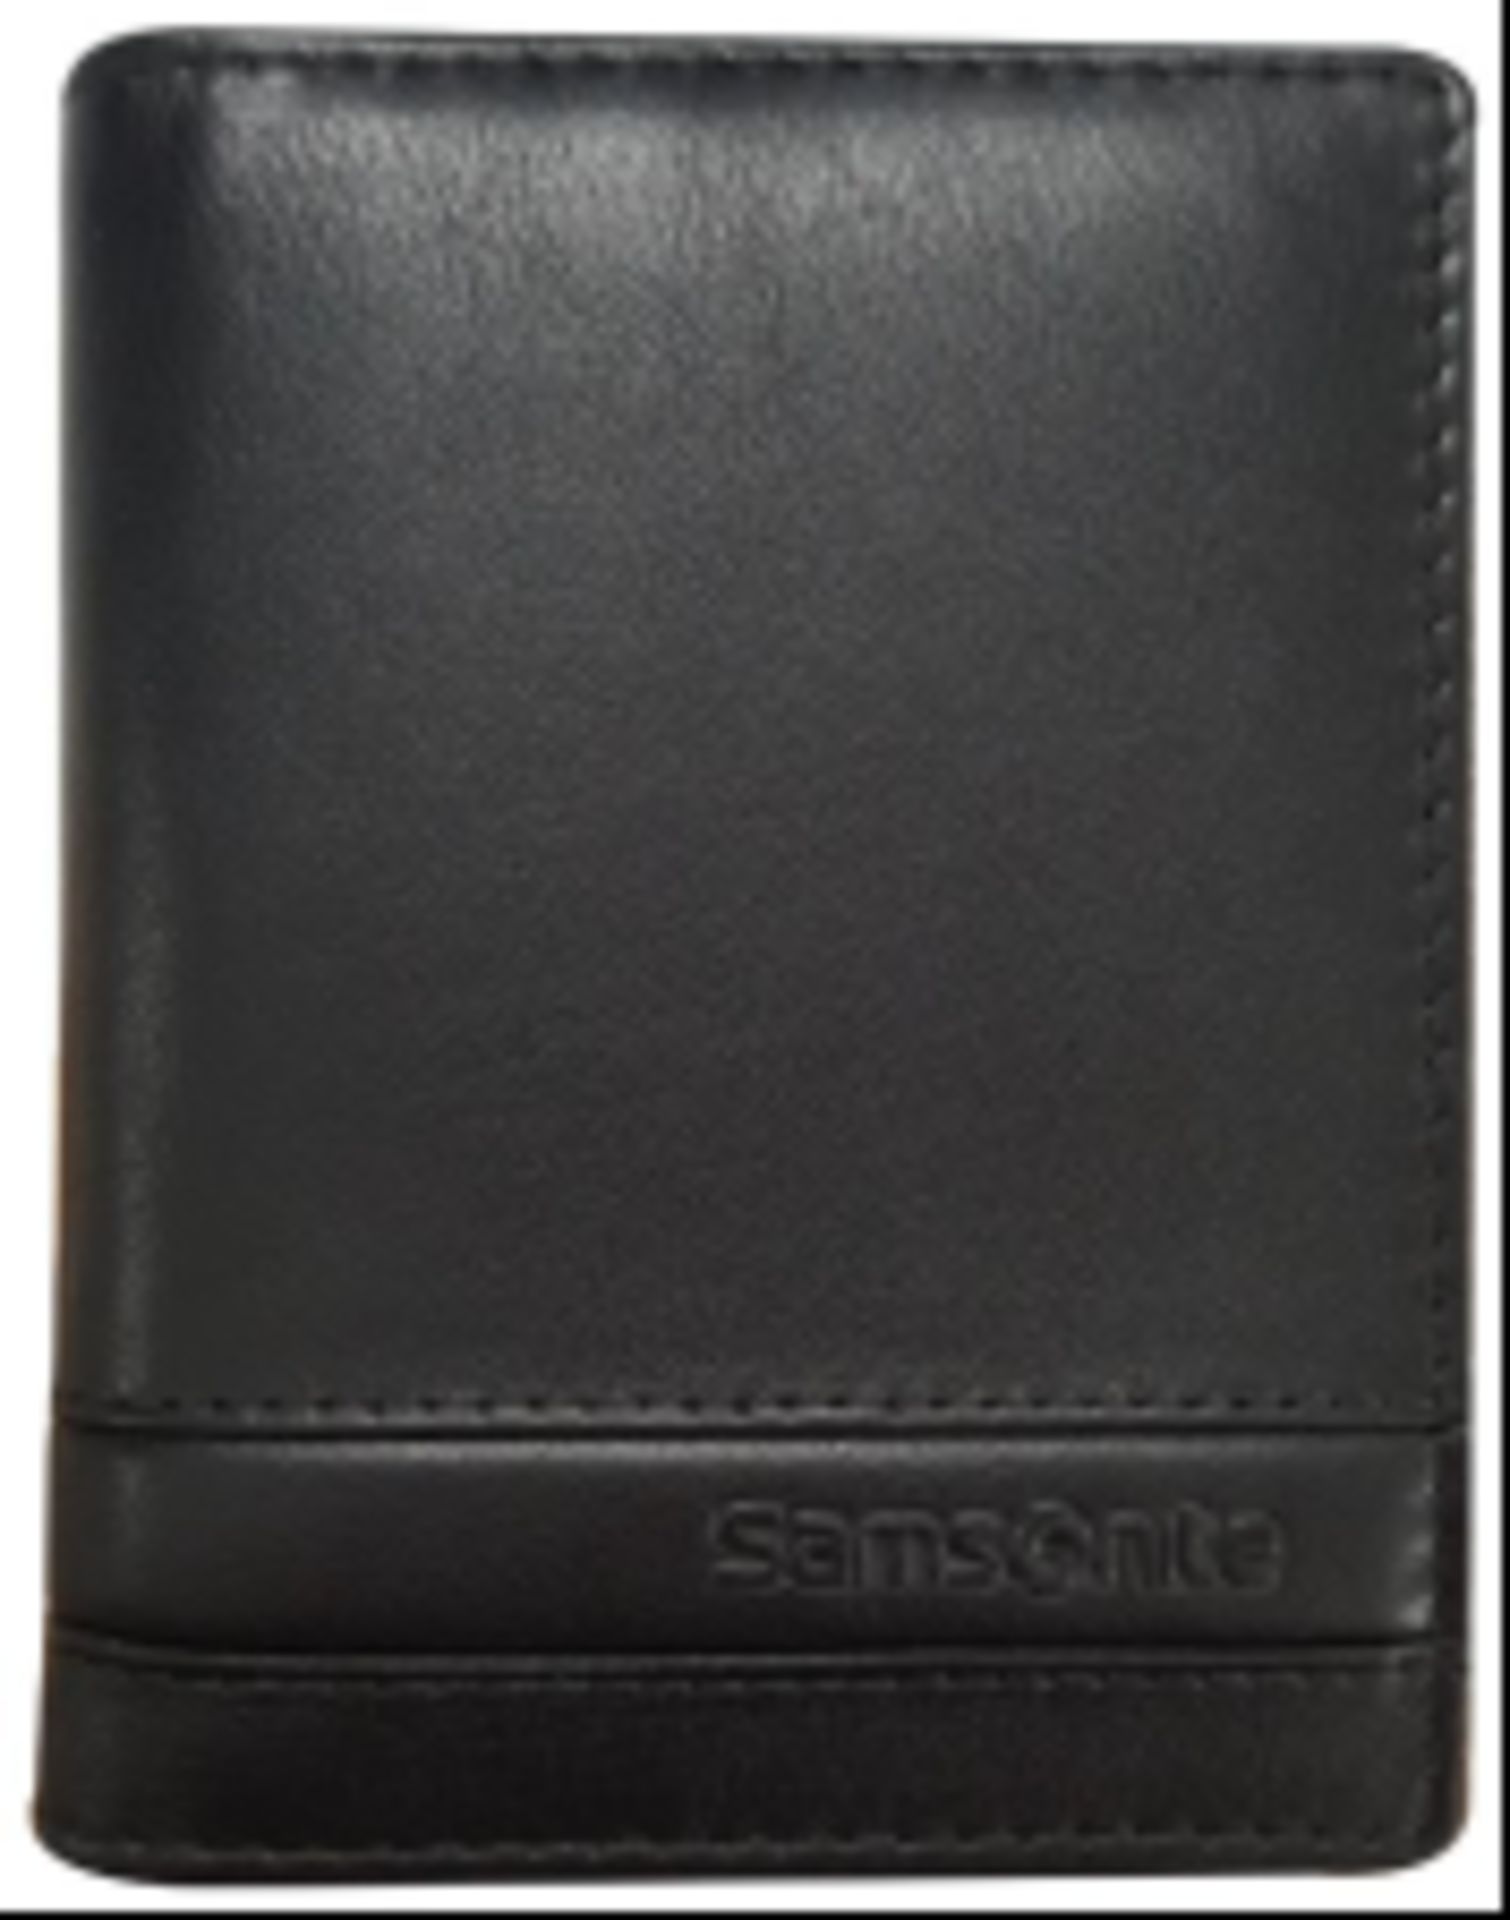 V Brand New Samsonite Gents Black Leather Card Holder - 12 Credit Card Slots - RRP: £35.95 X 2 - Image 3 of 3